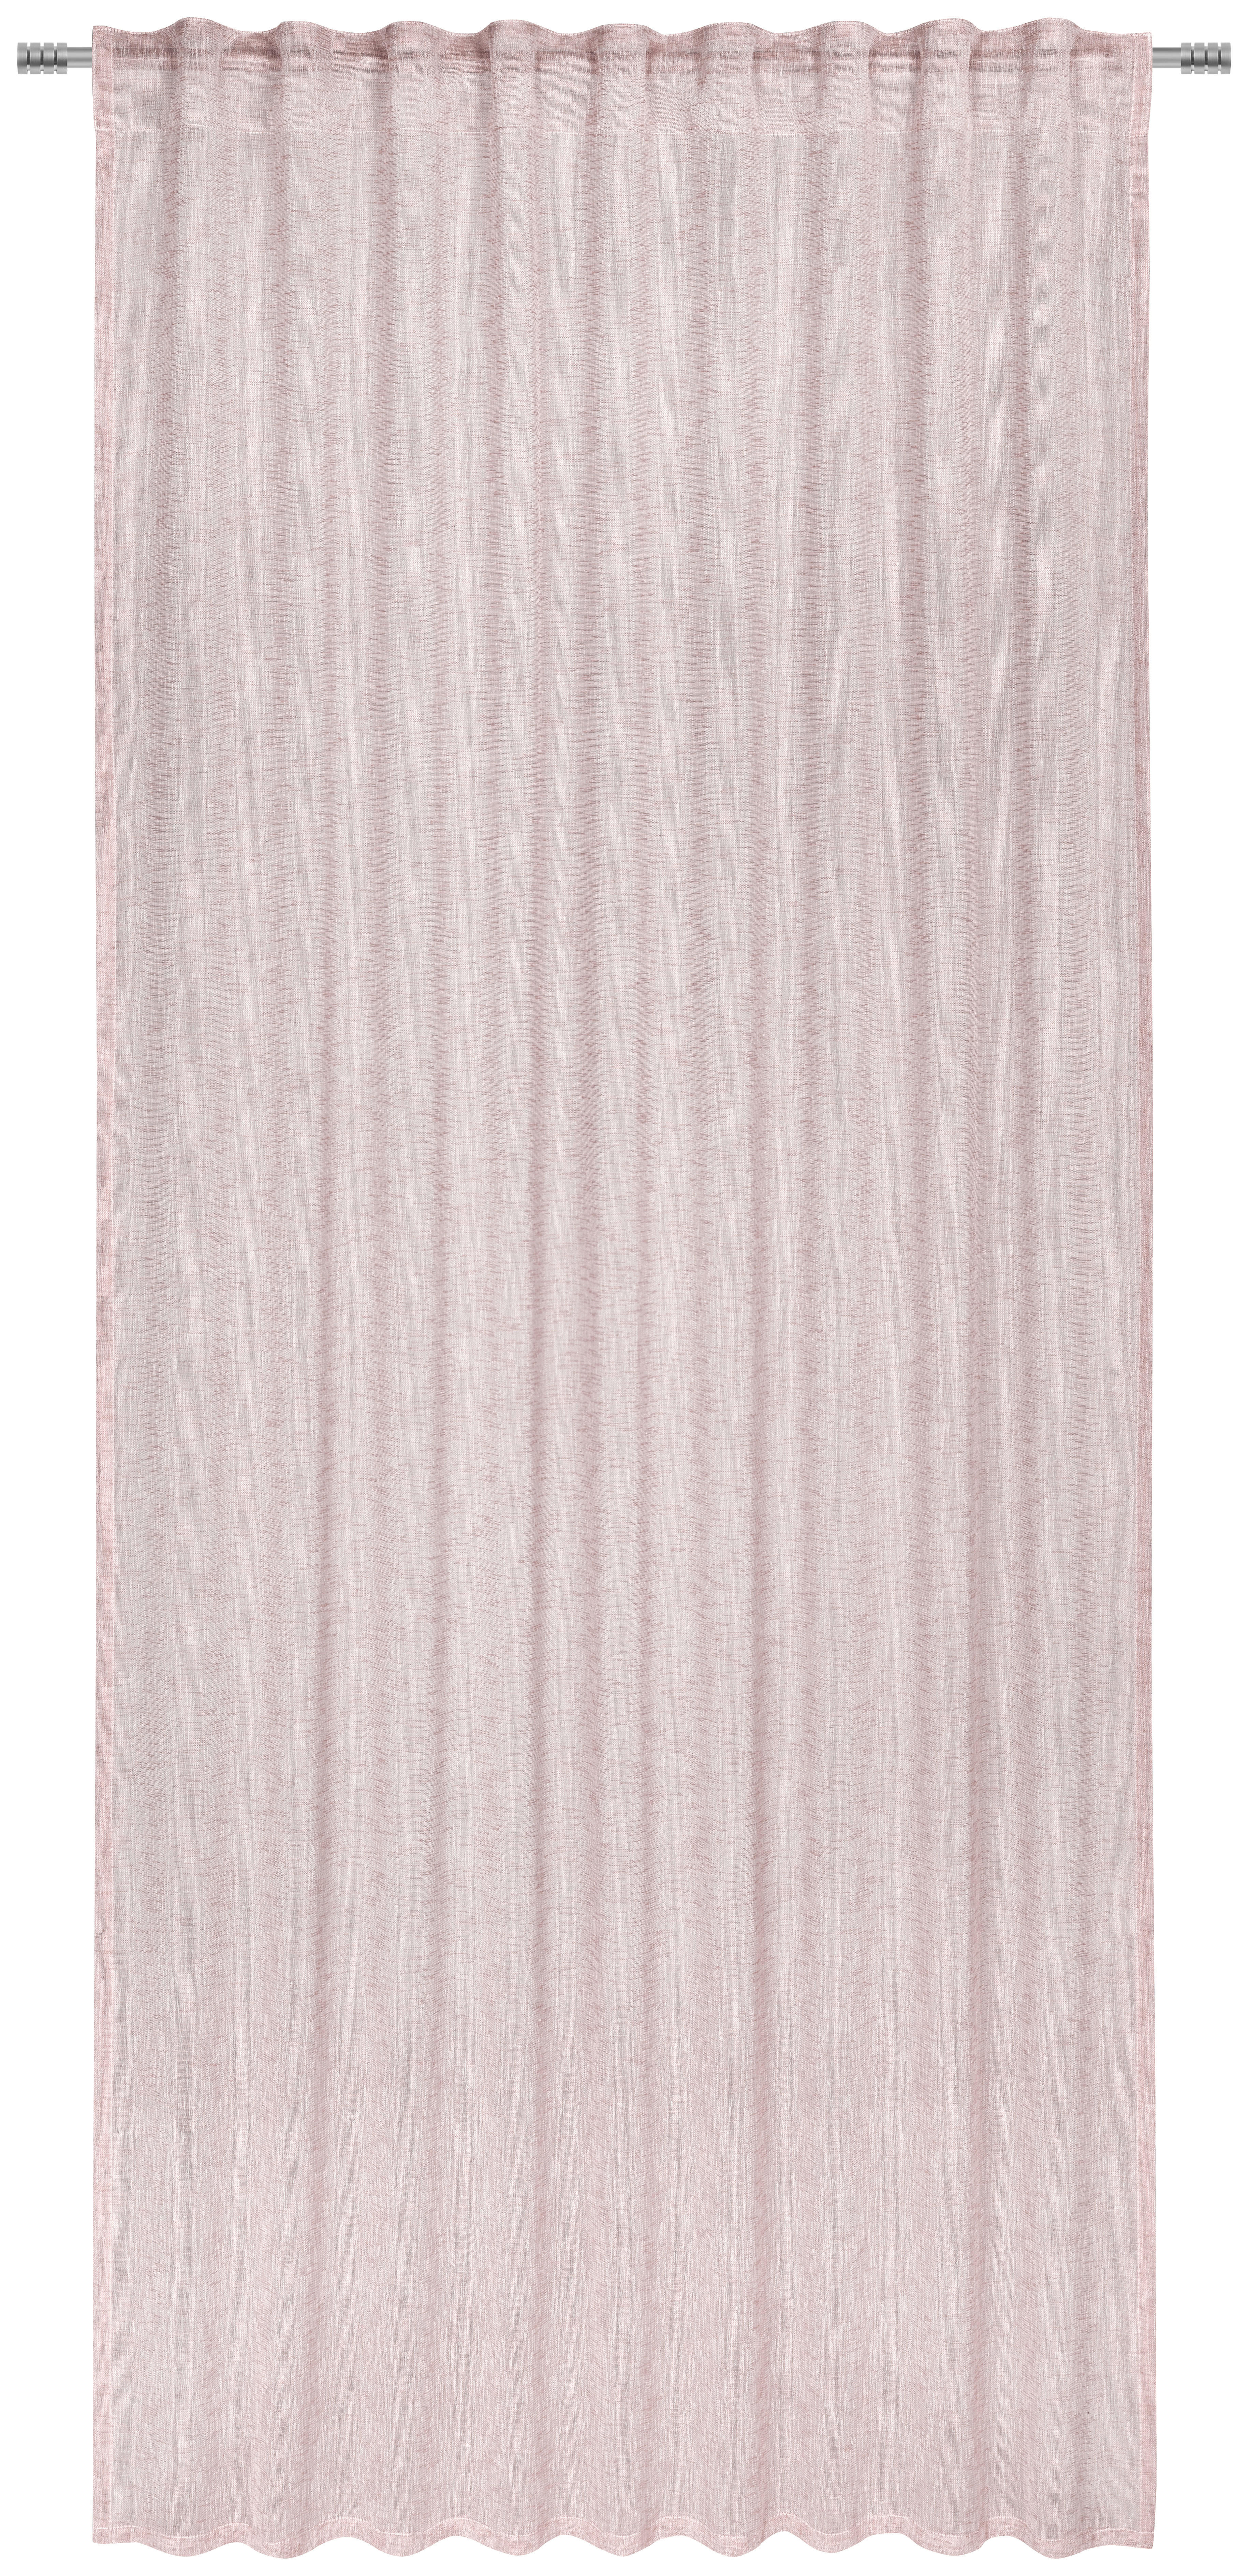 KÉSZFÜGGÖNY Részben áttetsző  - Rózsaszín, Basics, Textil (140/245cm) - Esposa